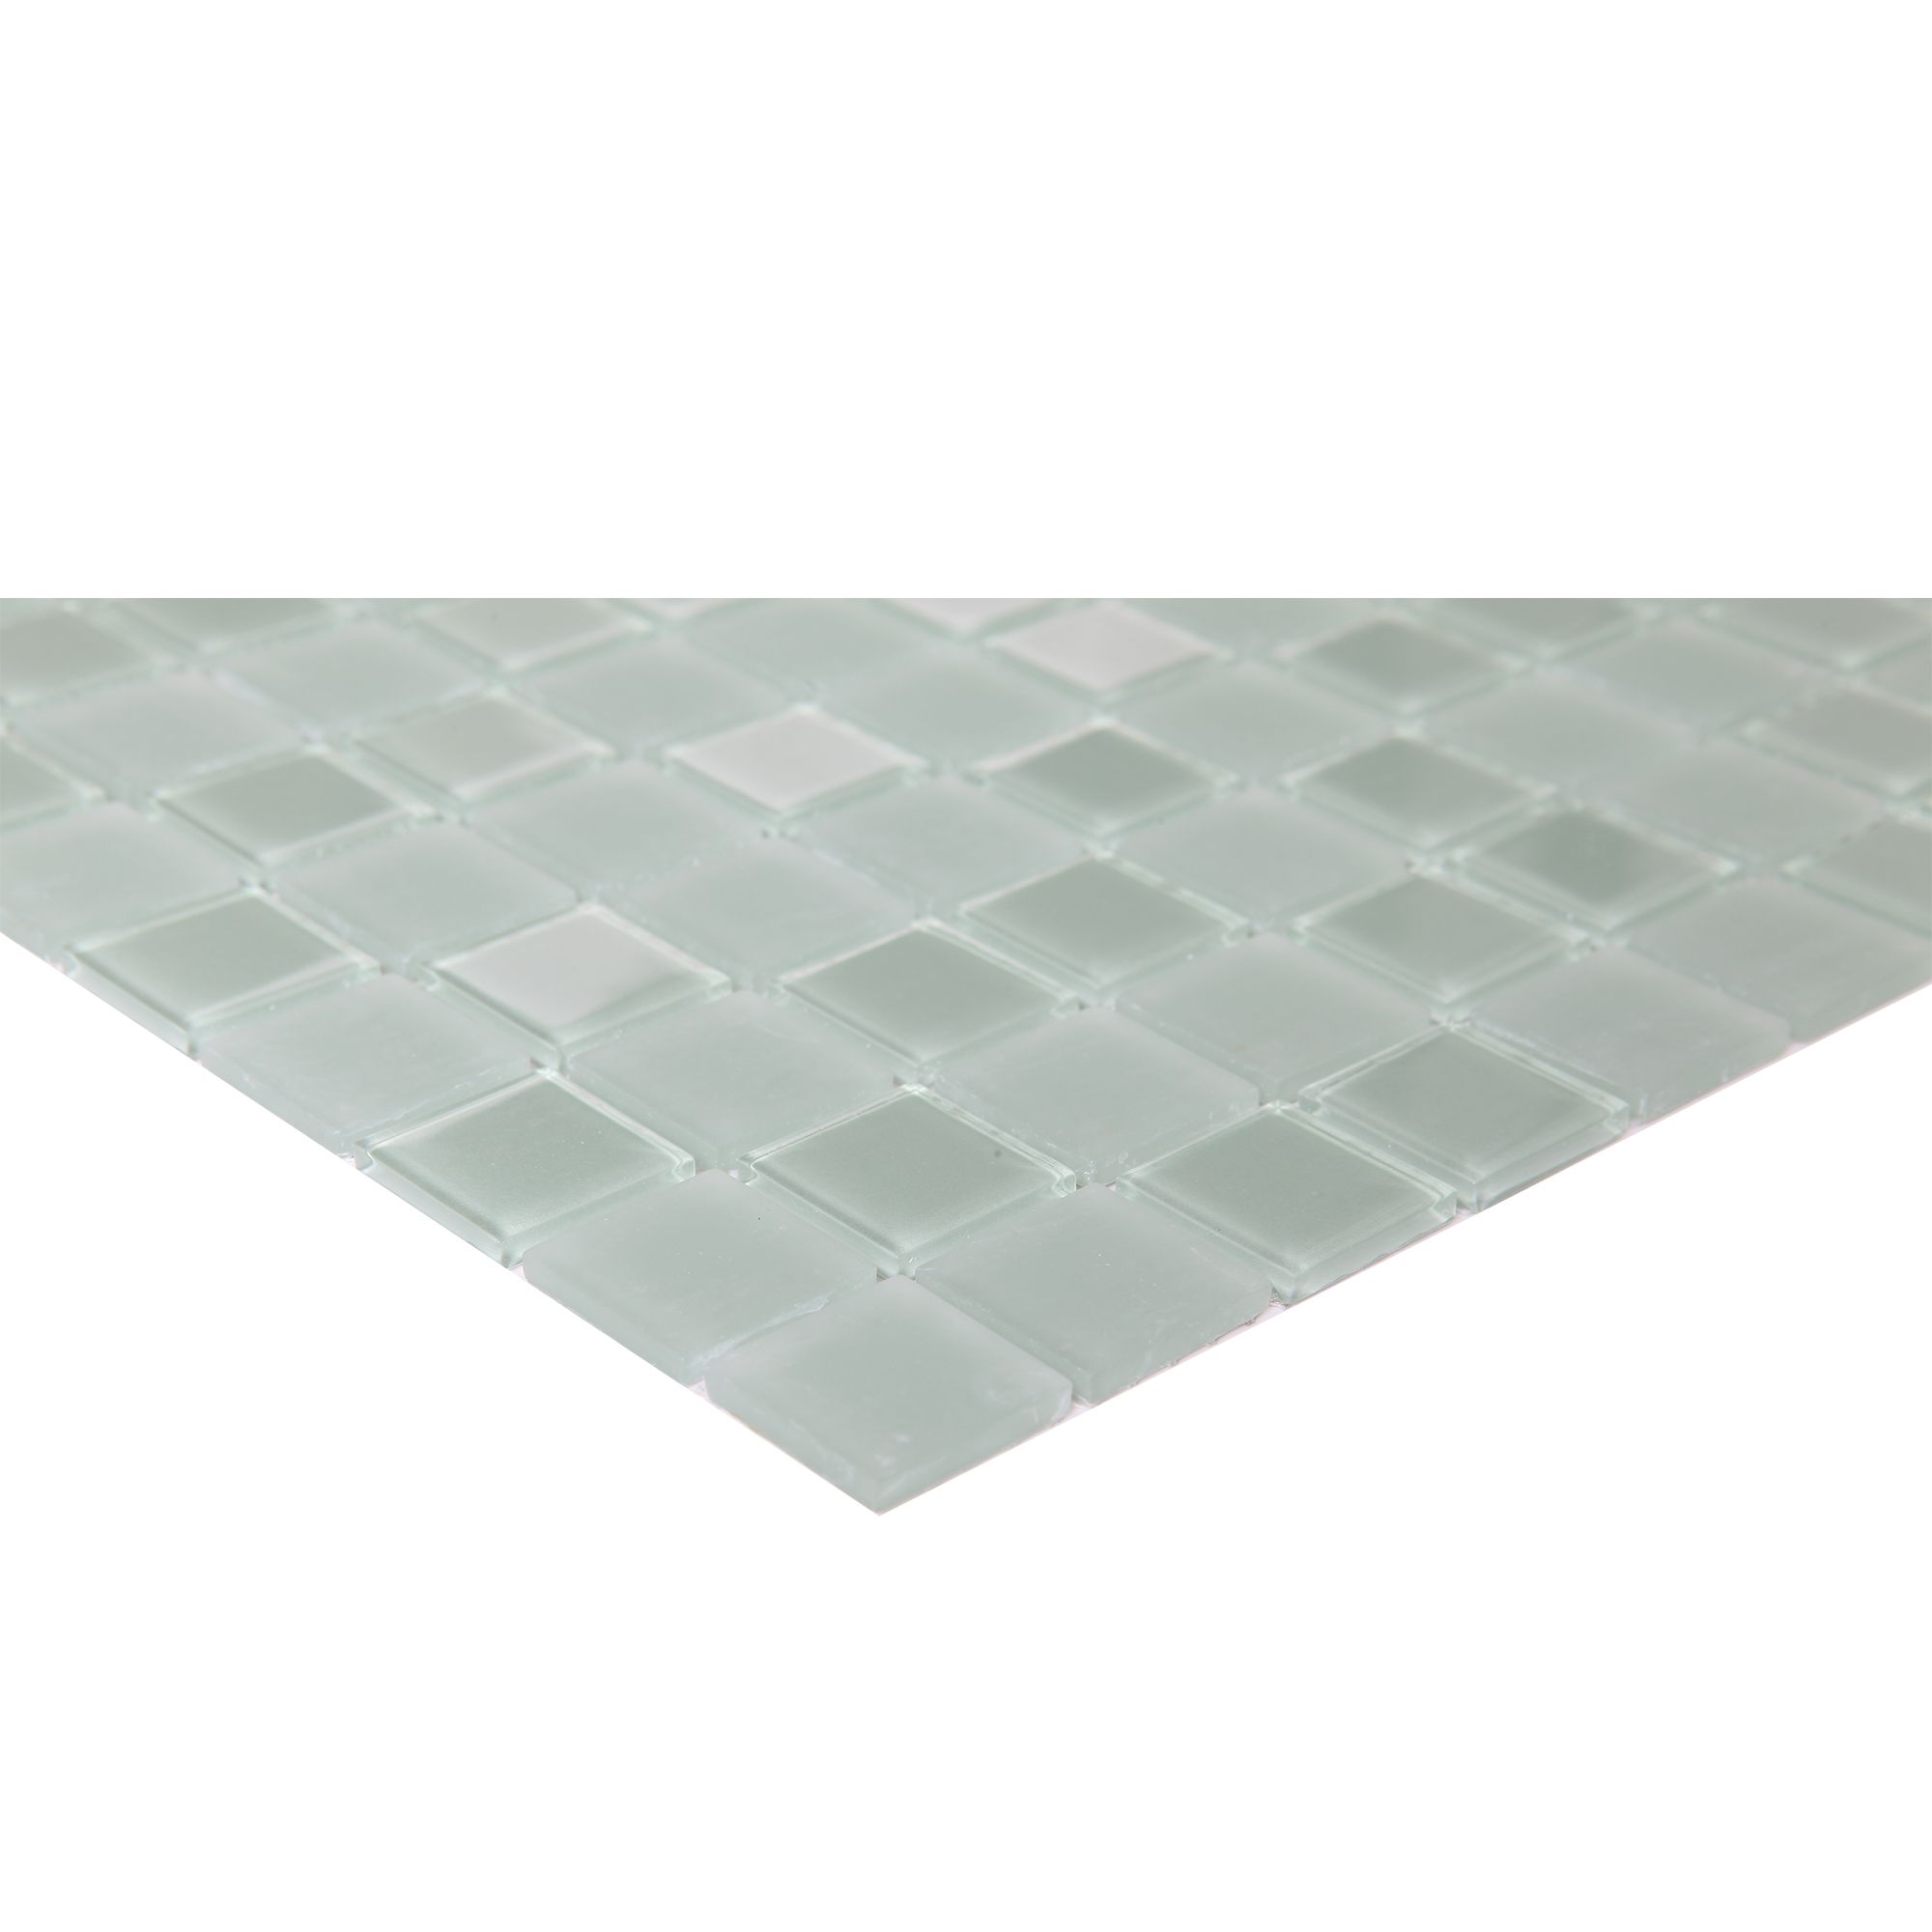 Glina Green Frosted Gloss & matt Glass effect Flat Glass Mosaic tile sheet, (L)300mm (W)300mm